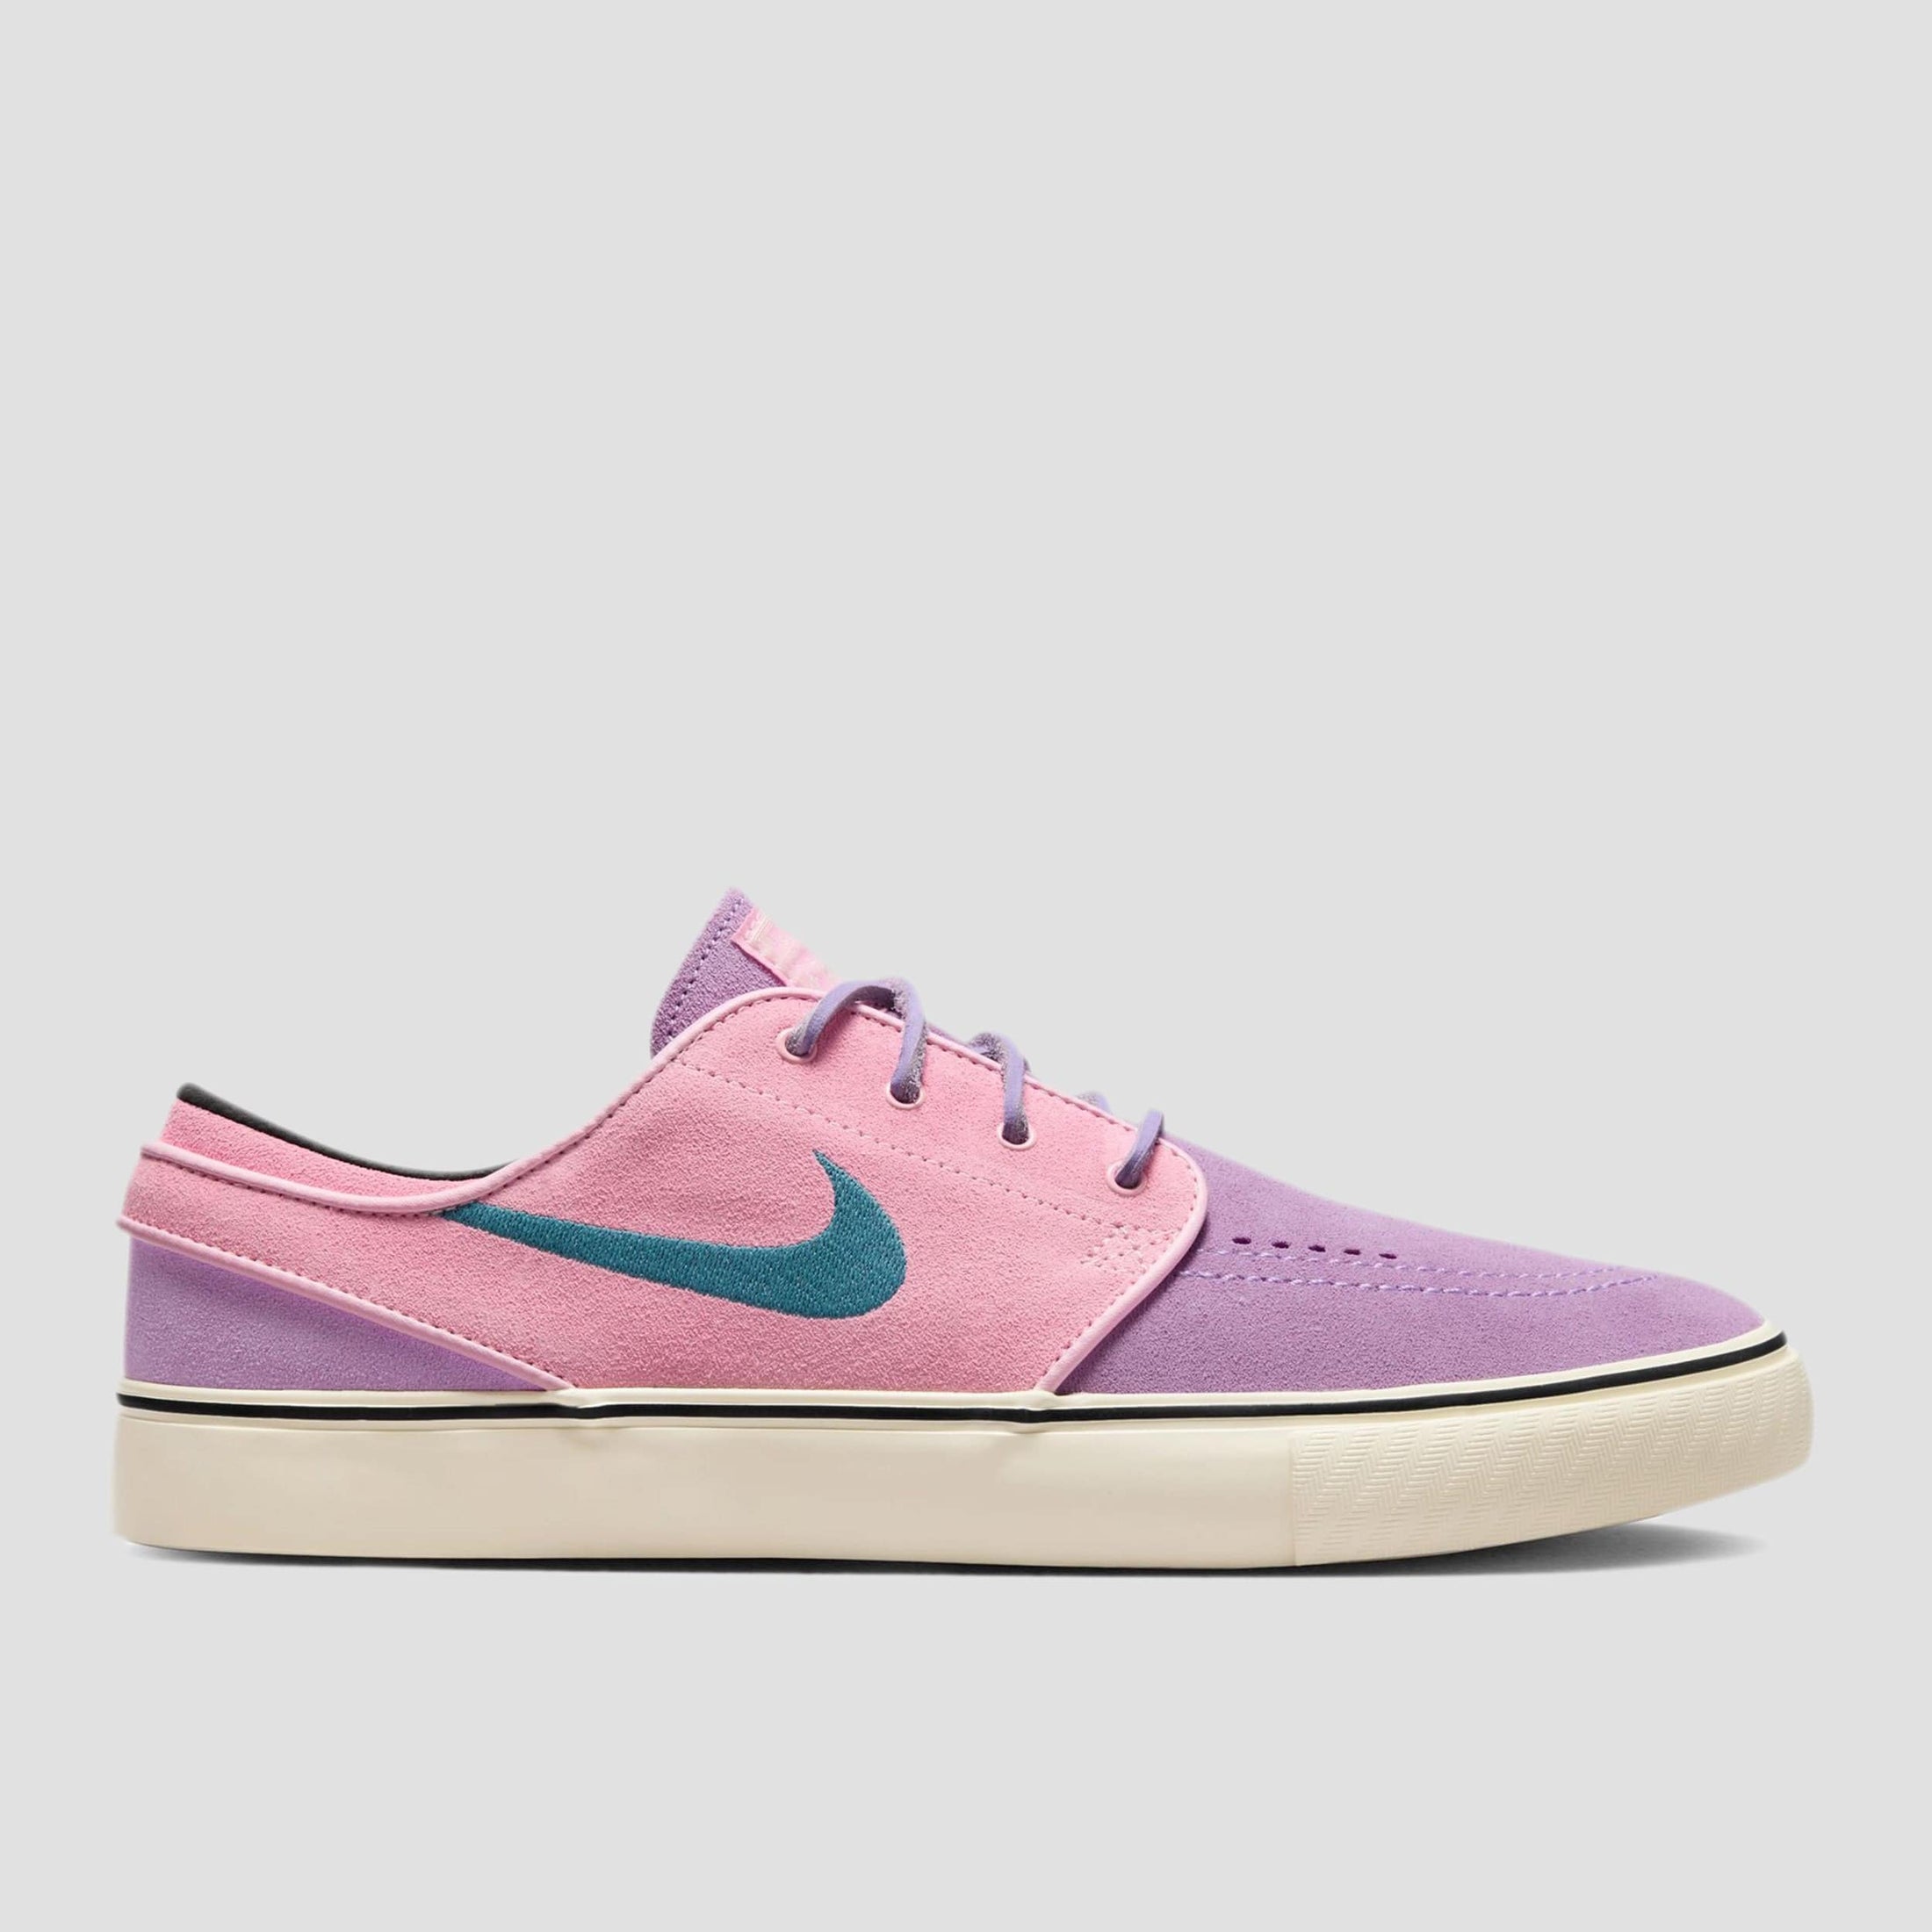 Nike SB Zoom Janoski OG+ Skate Shoes Lilac / Noise Aqua Med Soft Pink